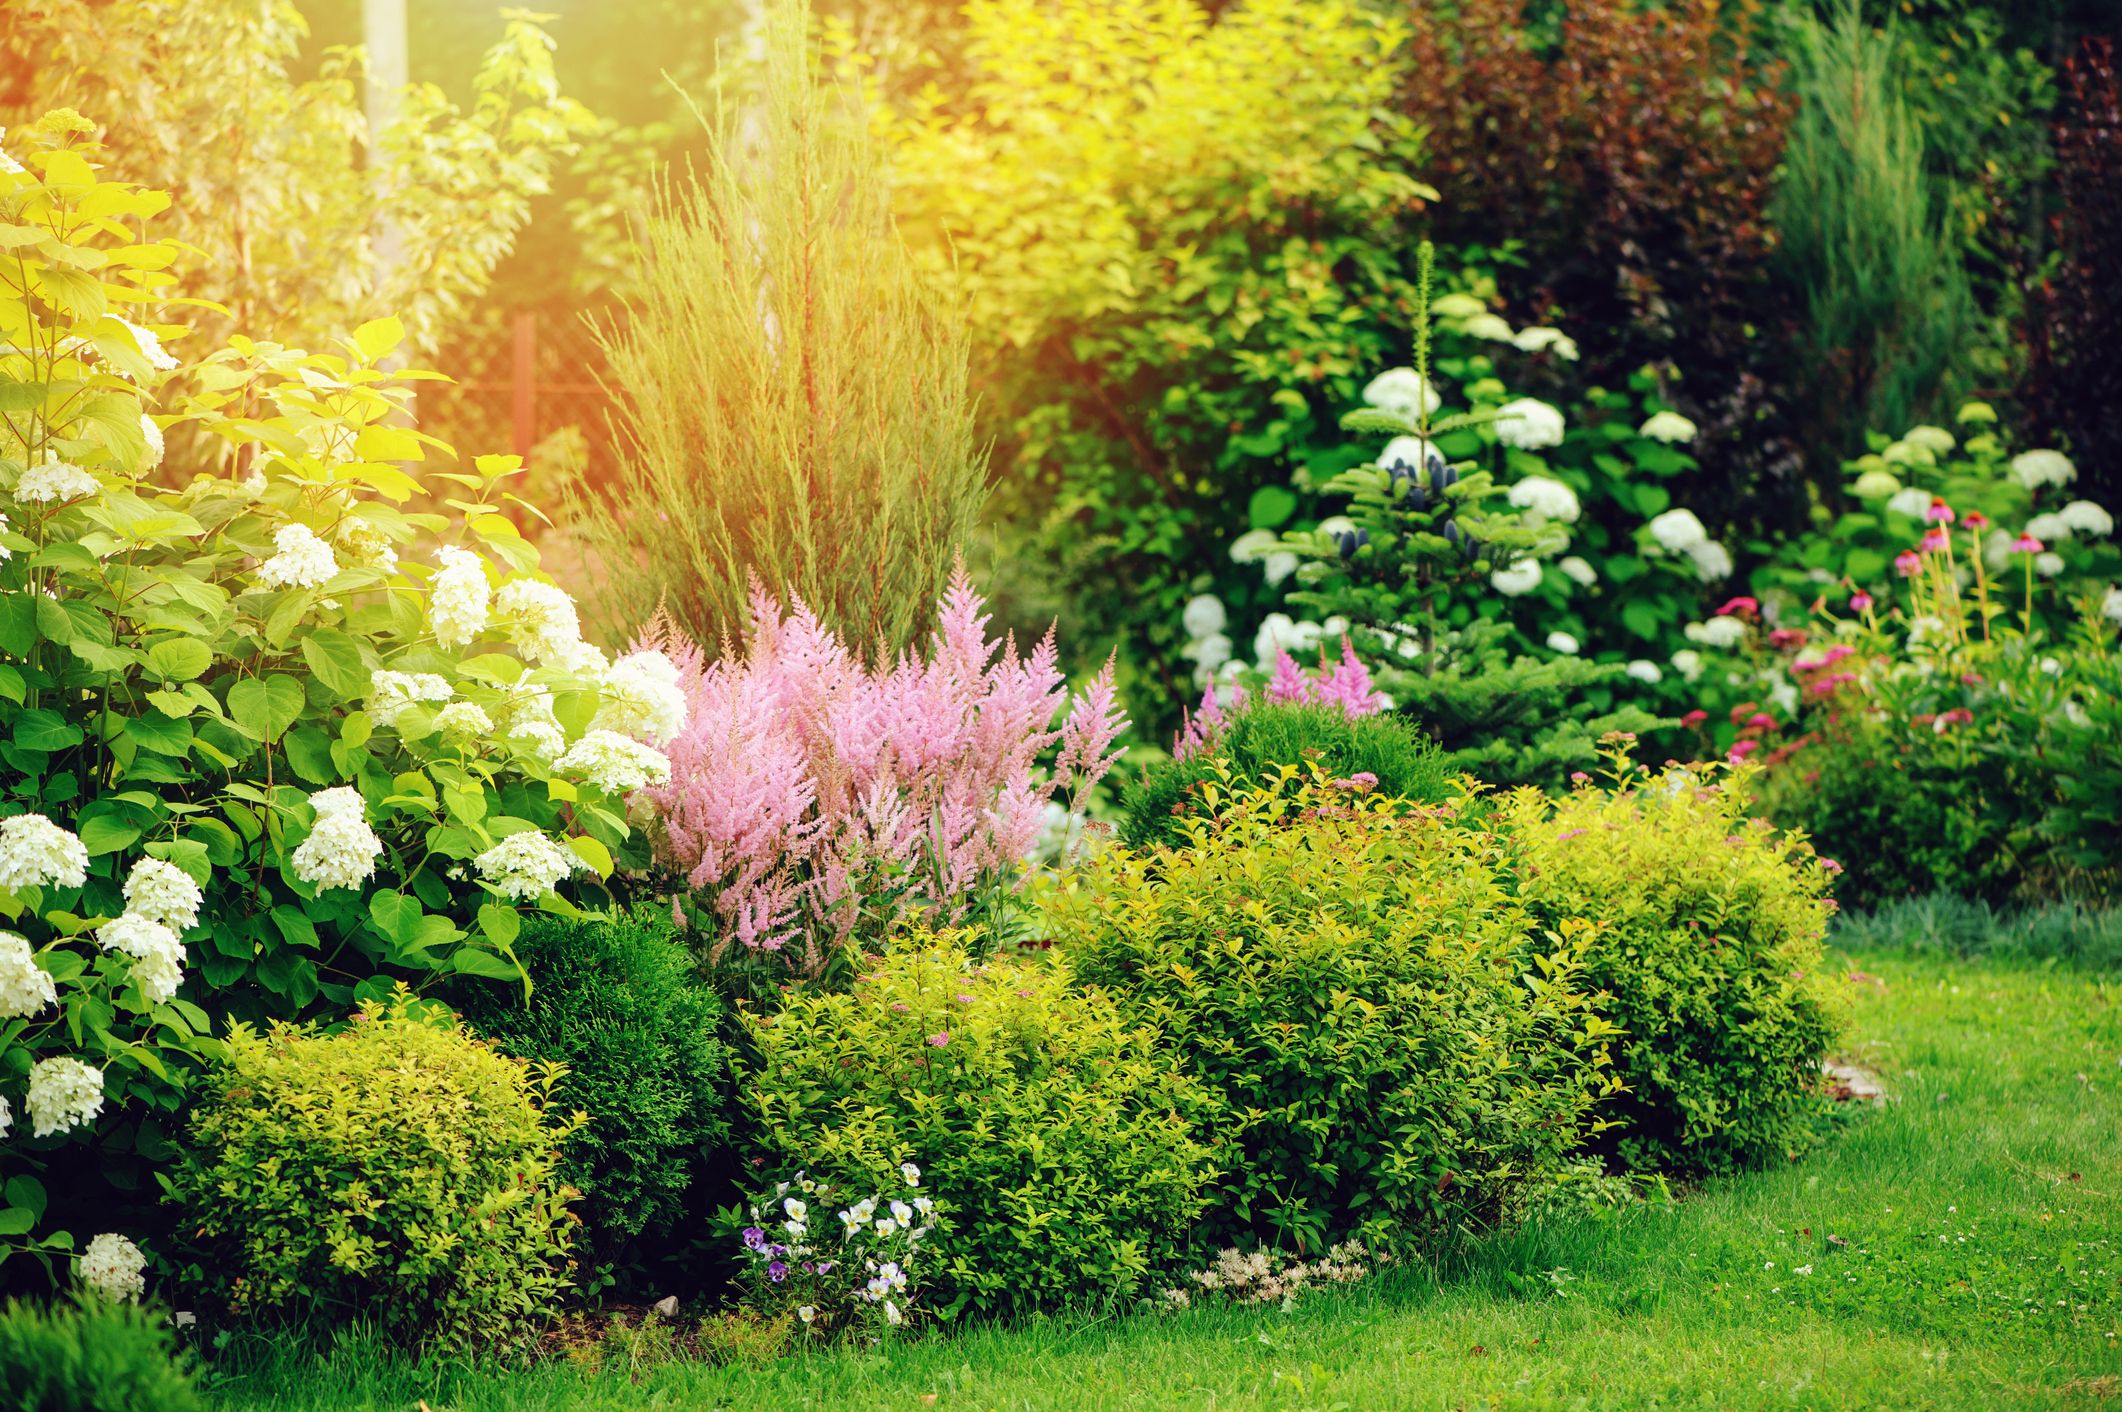 15 Best Small Shrubs for Gardens - Evergreen and Flowering Shrubs